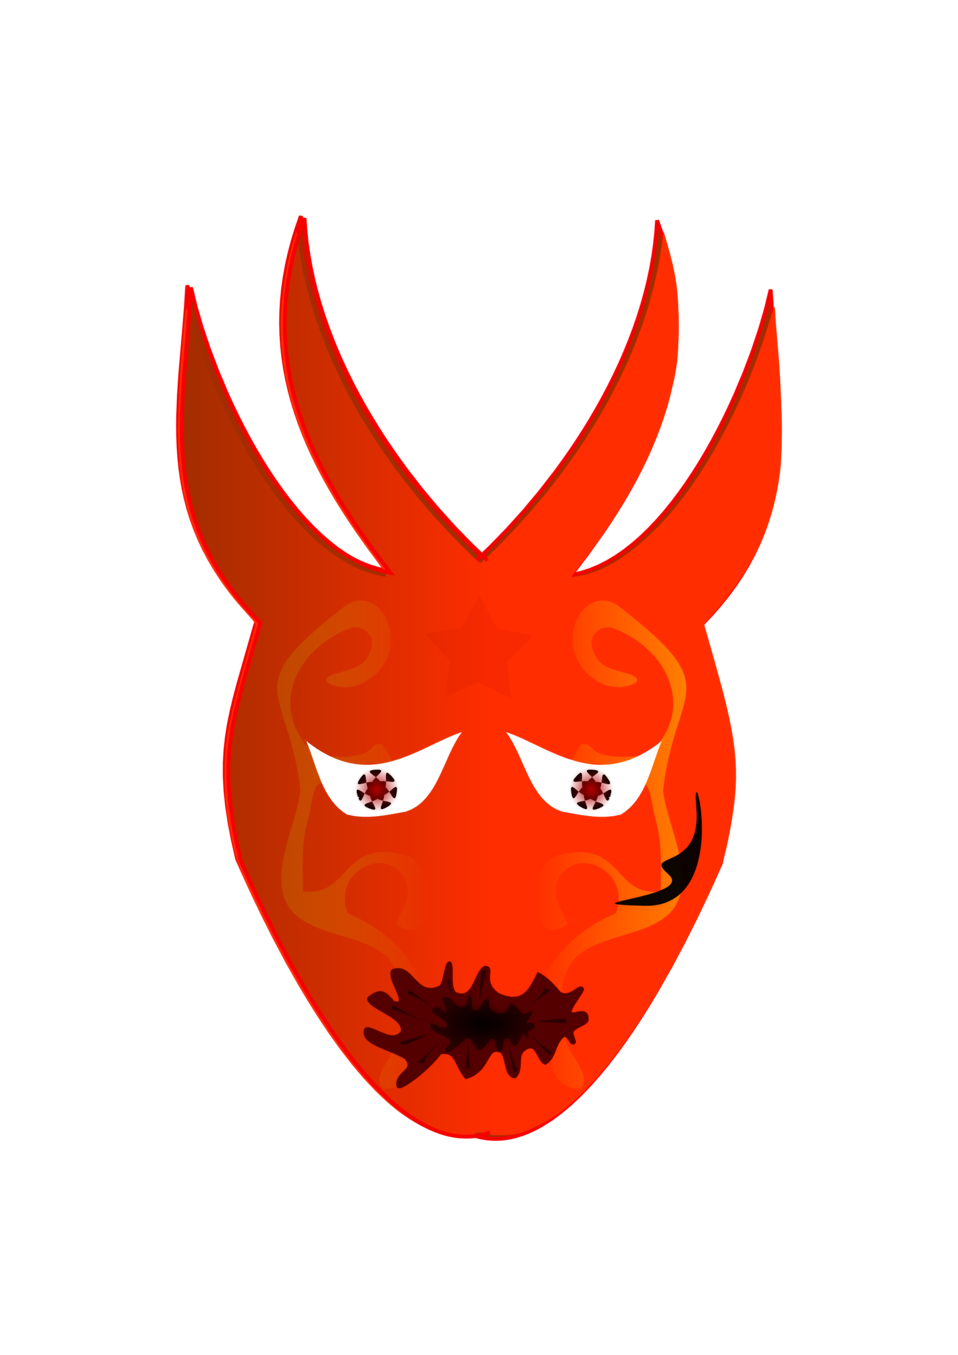 Devil Face Mask Background PNG Image